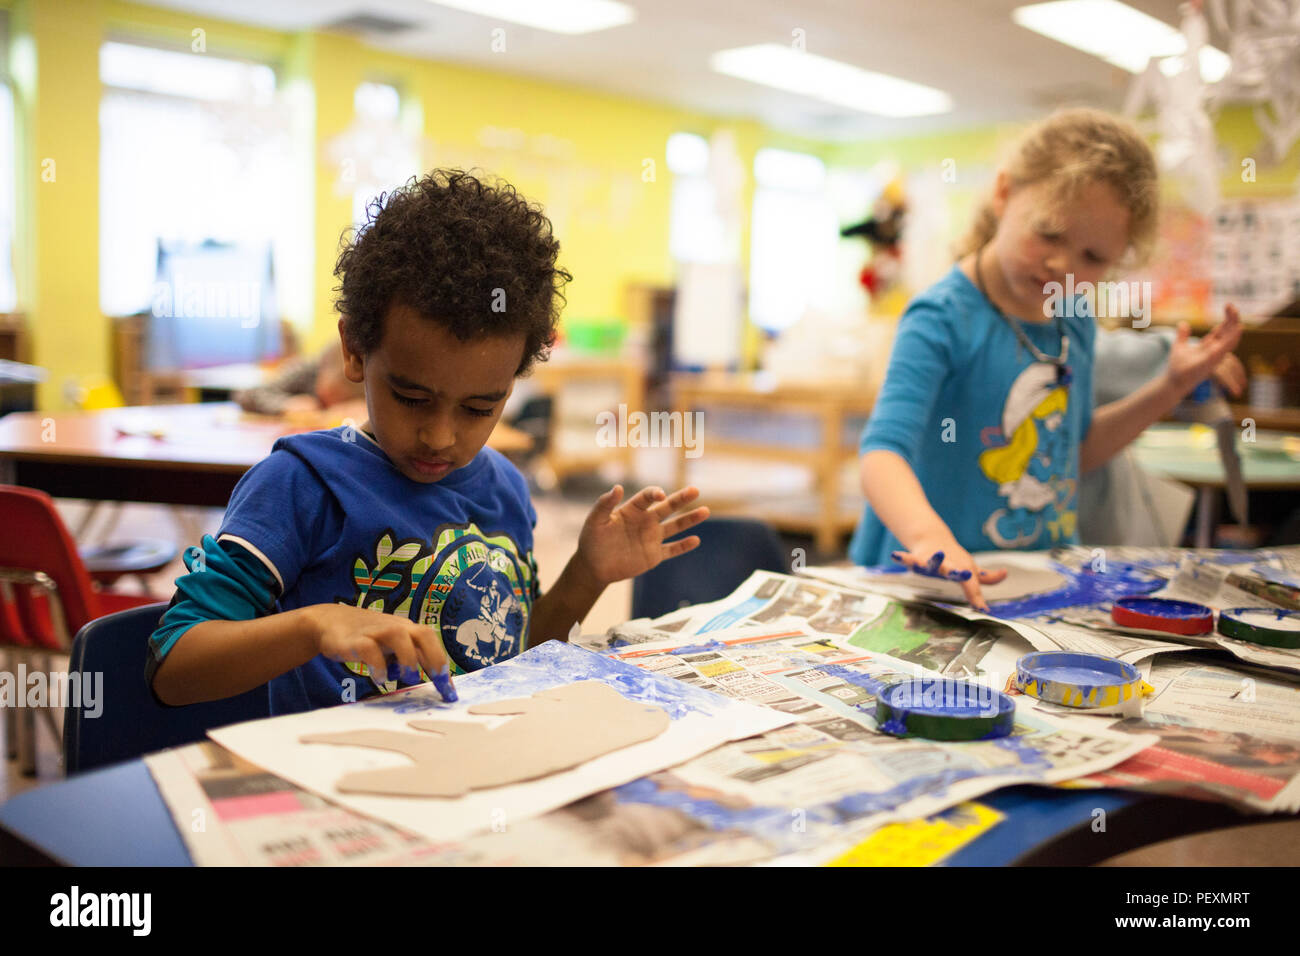 Schoolchildren finger painting in classroom Stock Photo